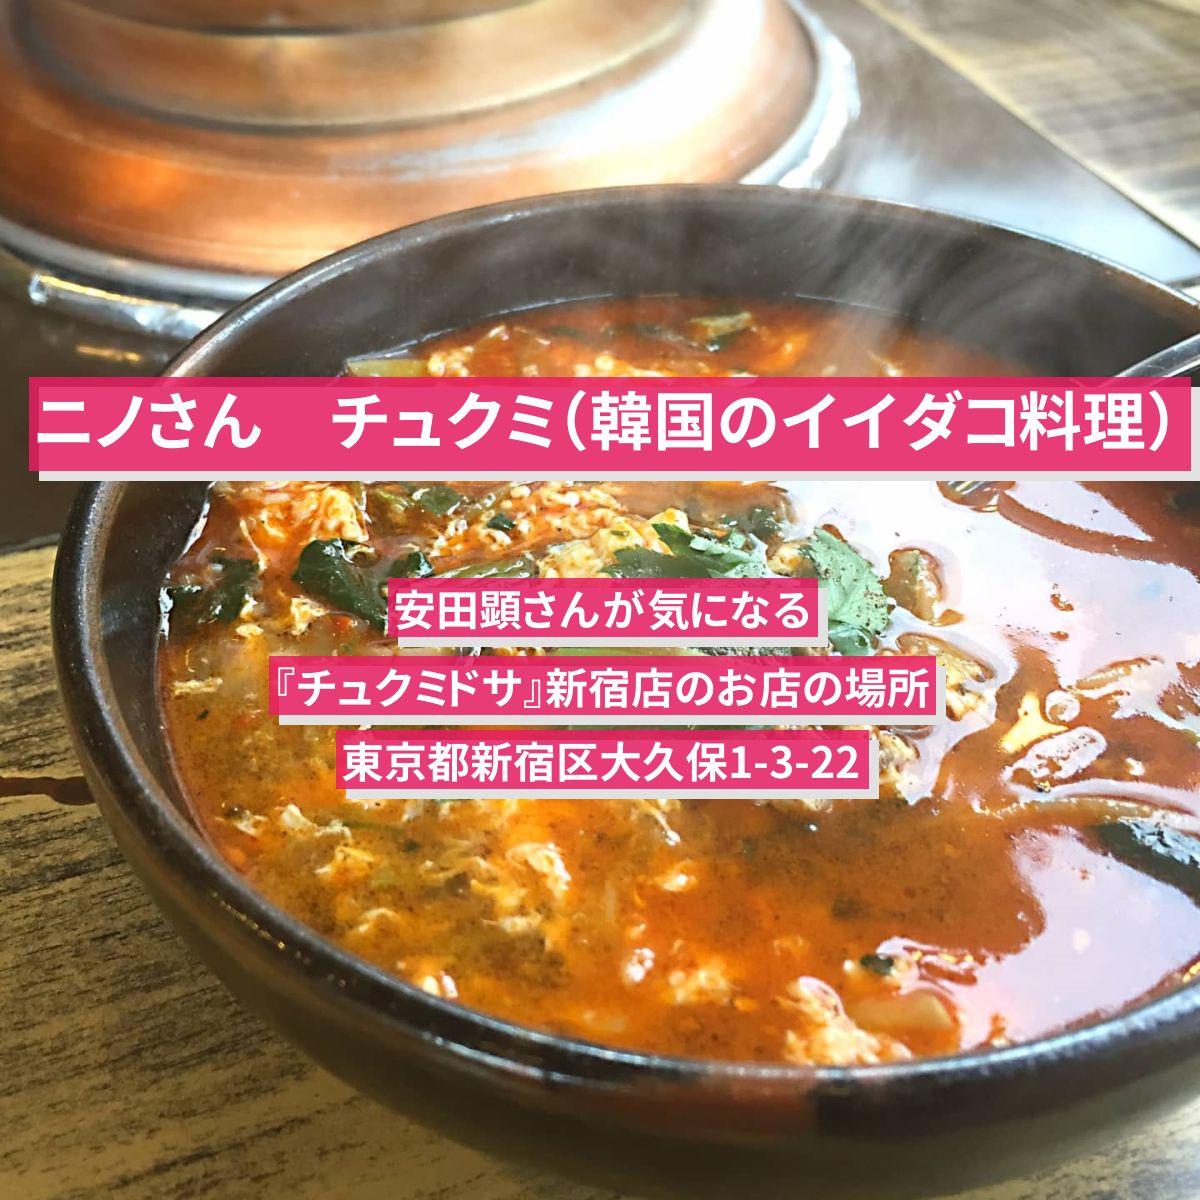 【ニノさん】チュクミ（韓国のイイダコ料理）安田顕『チュクミドサ』新宿店のお店の場所